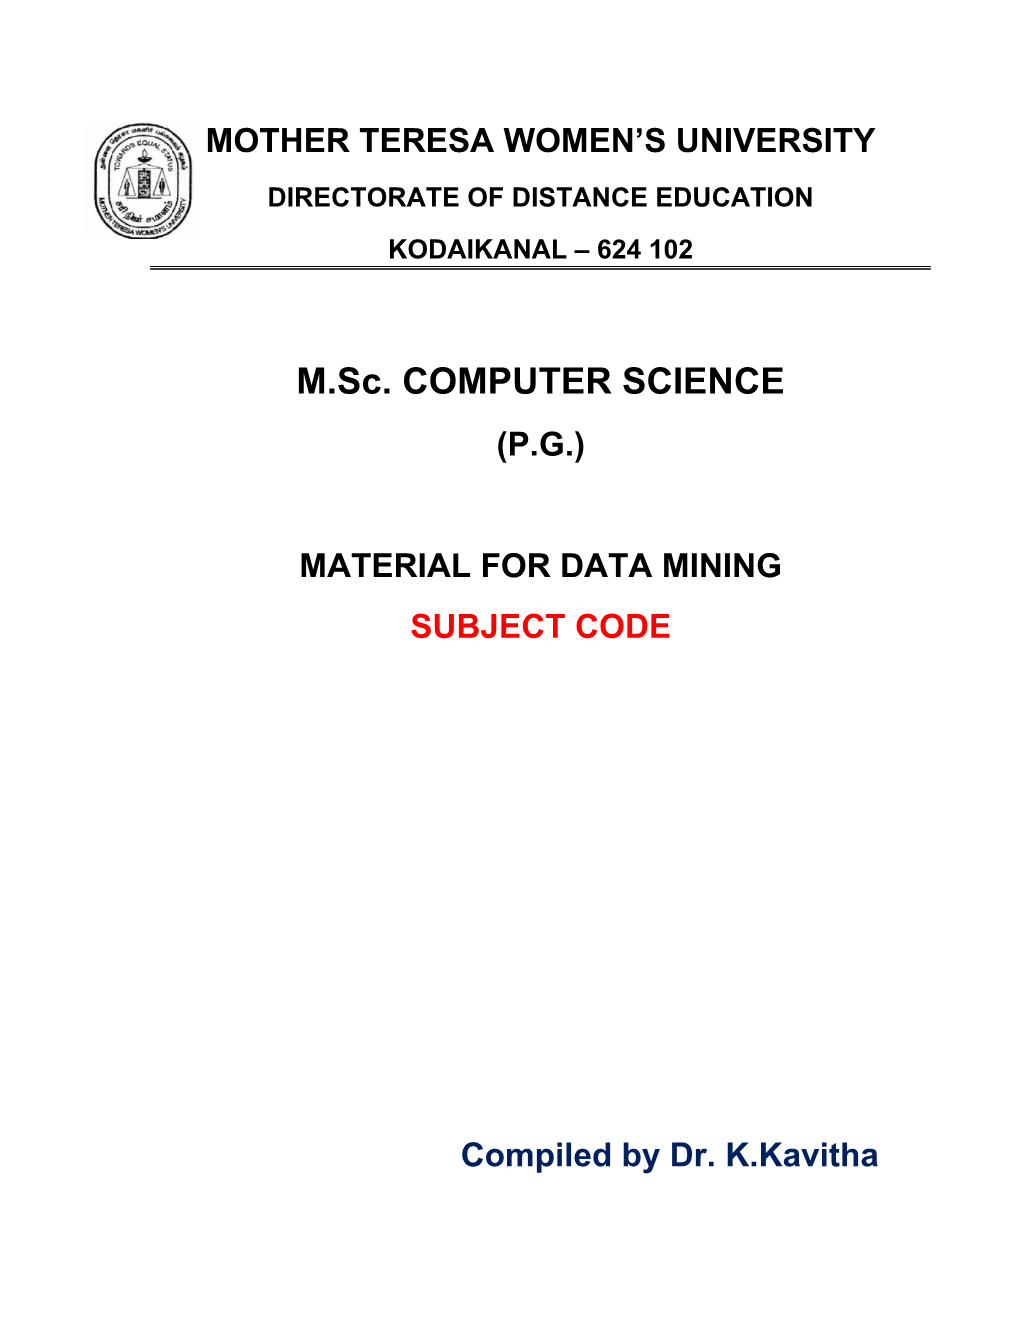 Data Mining Subject Code